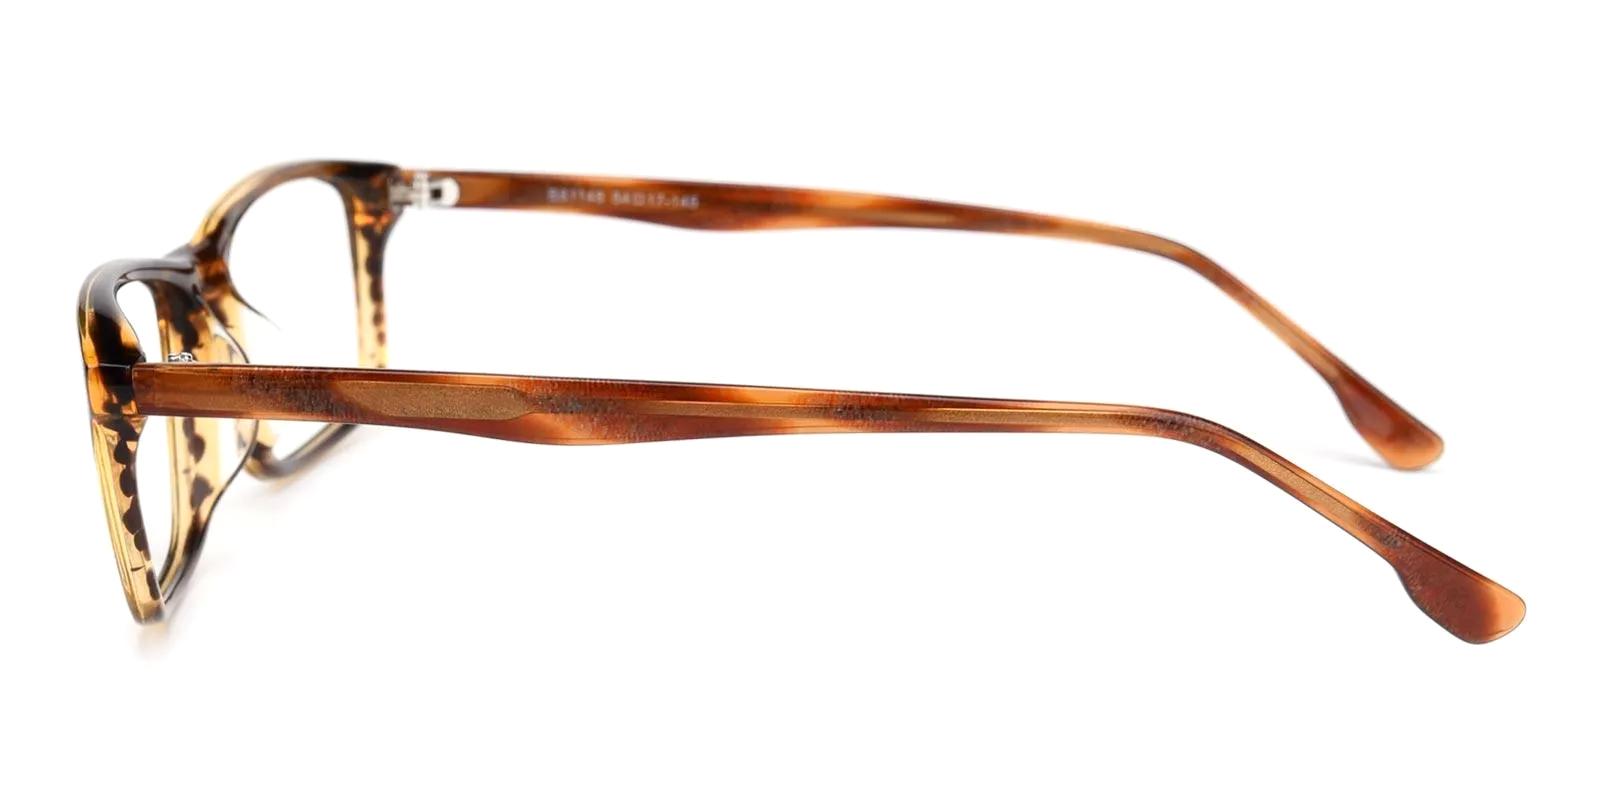 Aette Brown Acetate Eyeglasses , UniversalBridgeFit Frames from ABBE Glasses